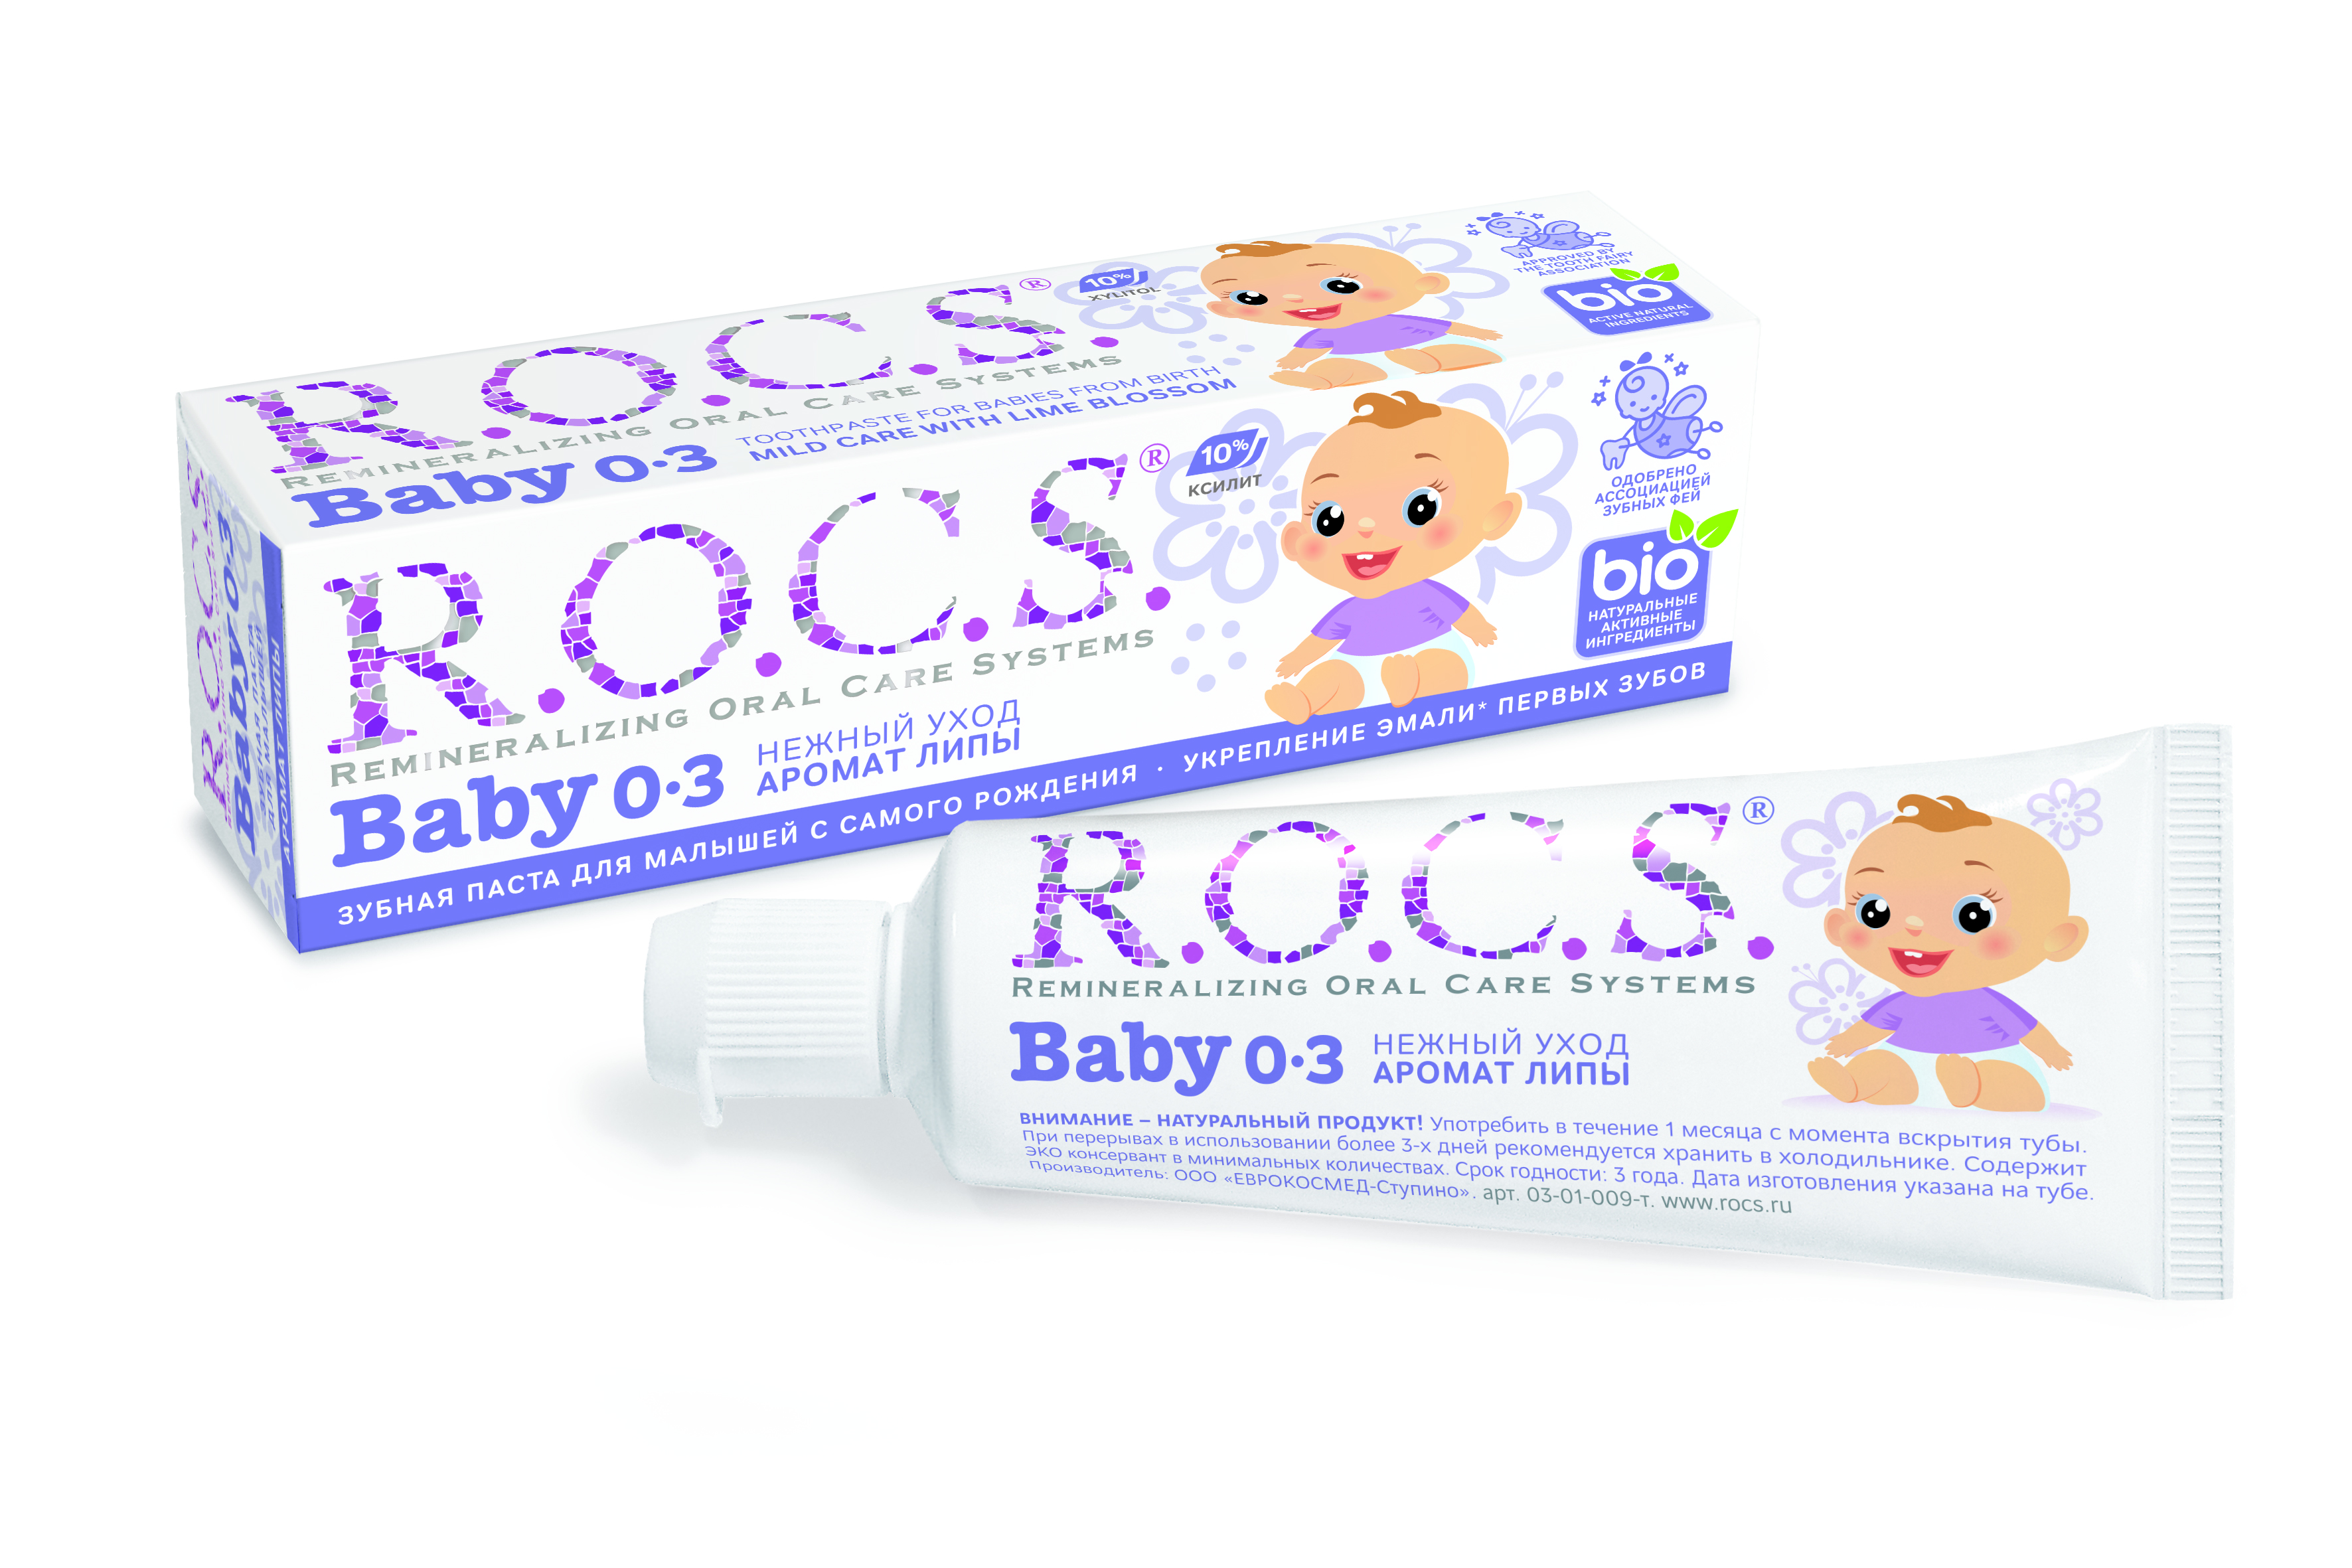 Рокс паста зубная Нежный уход для младенцев аромат липы 45г, World Dental Systems  - купить